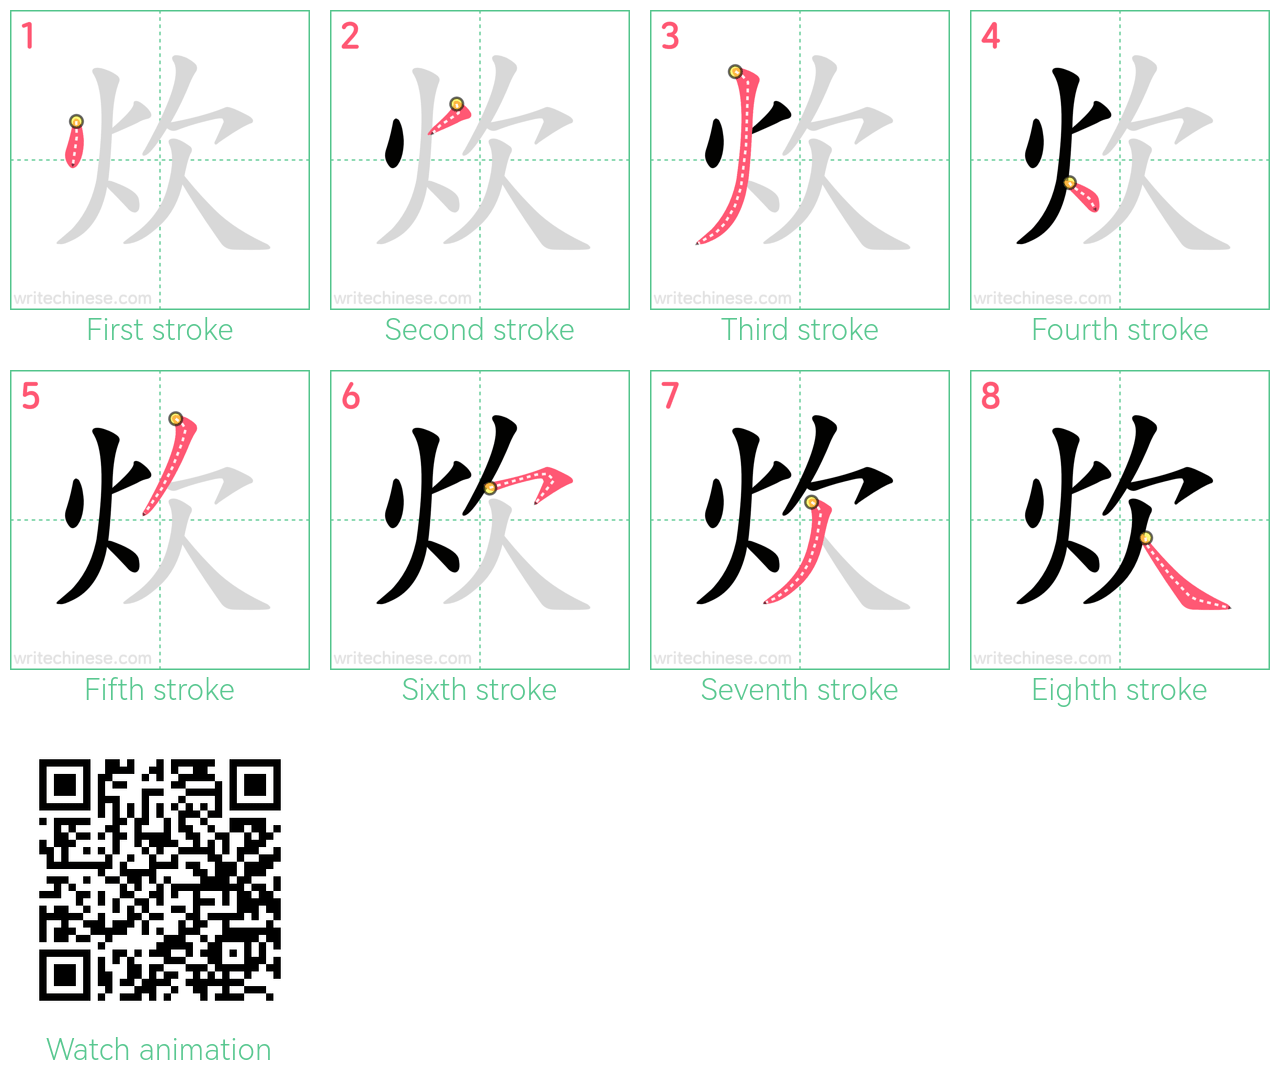 炊 step-by-step stroke order diagrams